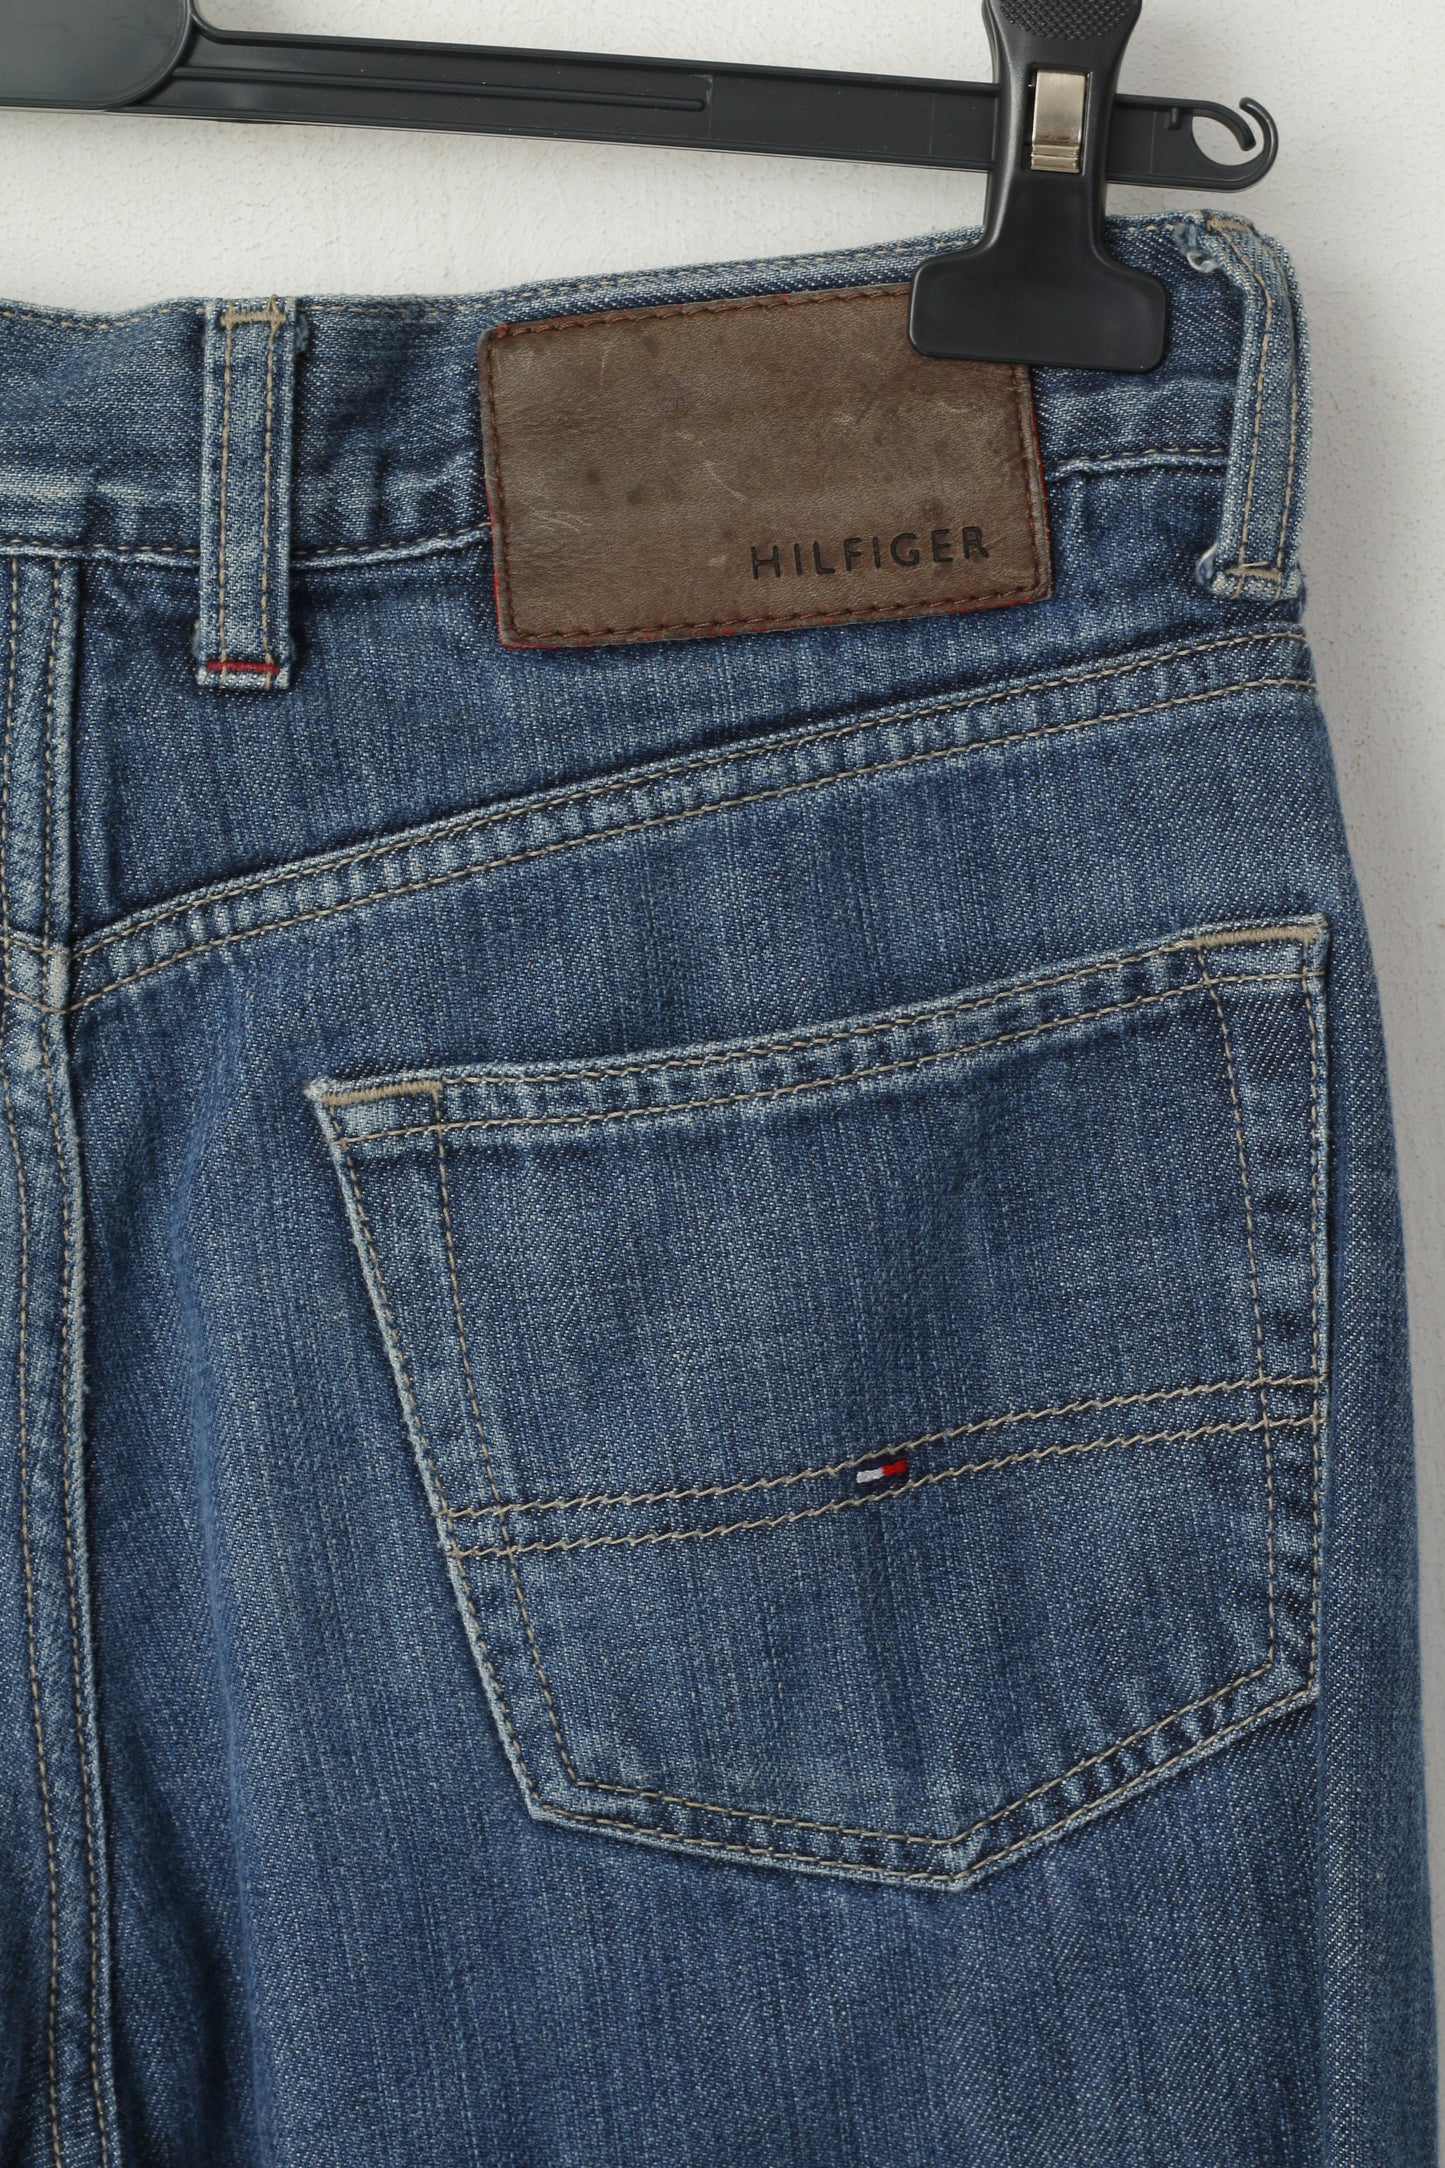 Tommy Hilfiger Men 30 Jeans Trousers Cotton Blue Denim Straight Regular Pants